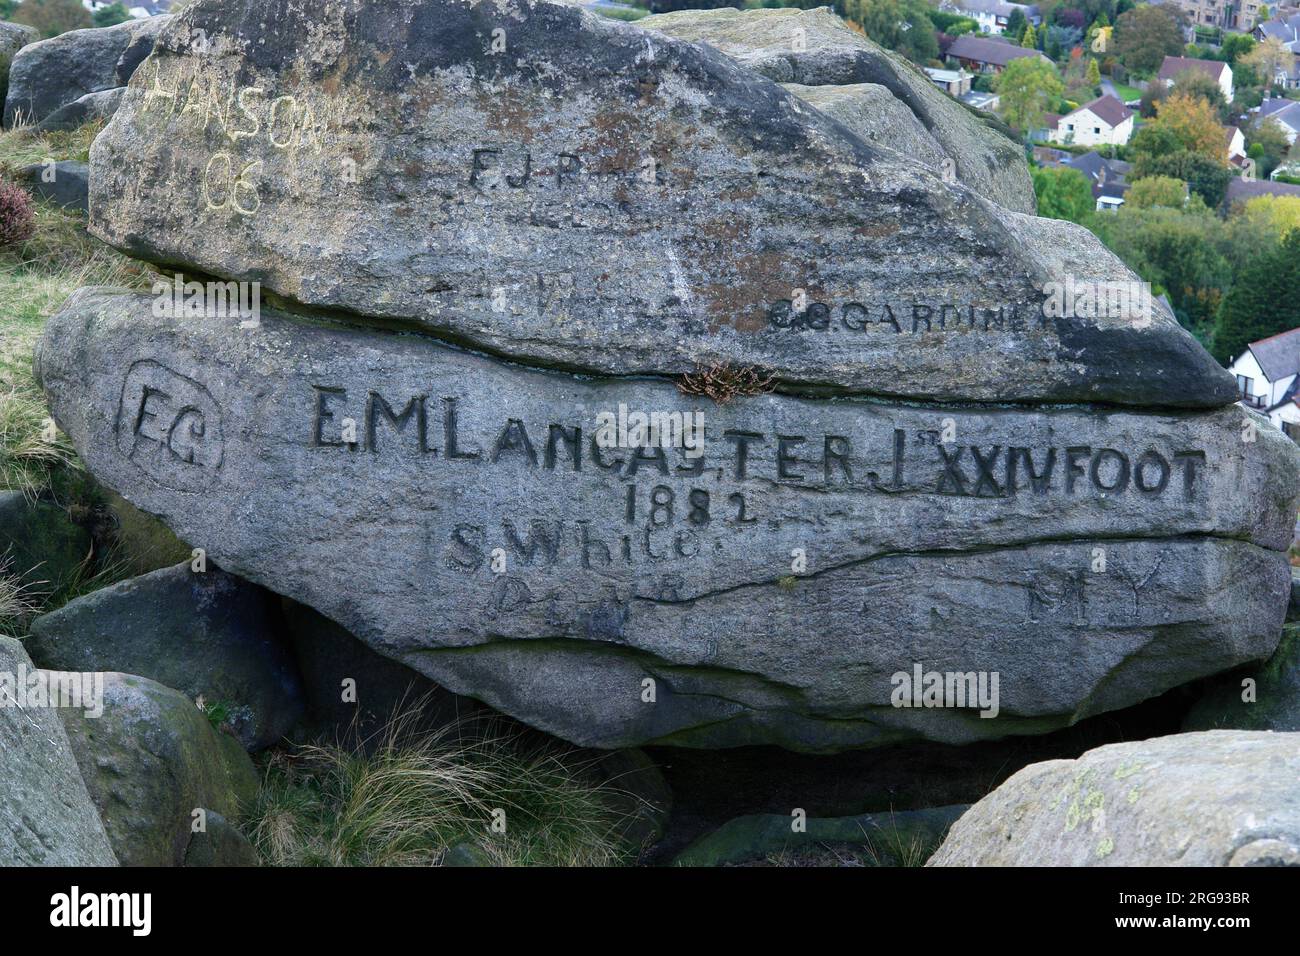 Namen auf Felsen gemeißelt in Ilkley Moor, West Yorkshire. Der prominenteste Name ist E M Lancaster, 1. XXIV Fuß, 1882. Stockfoto